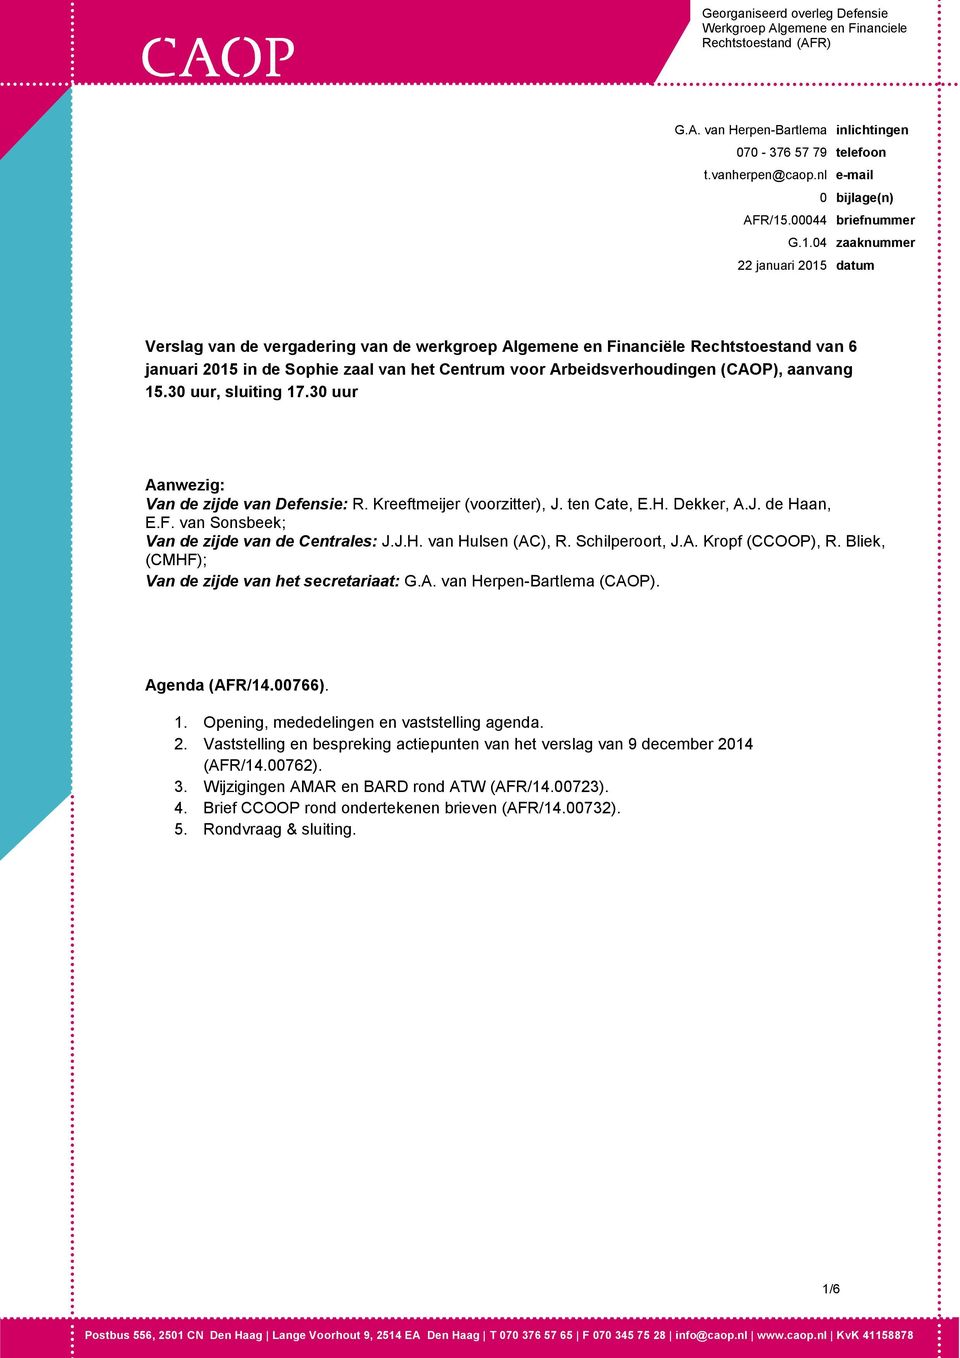 04 zaaknummer 22 januari 2015 datum Verslag van de vergadering van de werkgroep Algemene en Financiële Rechtstoestand van 6 januari 2015 in de Sophie zaal van het Centrum voor Arbeidsverhoudingen